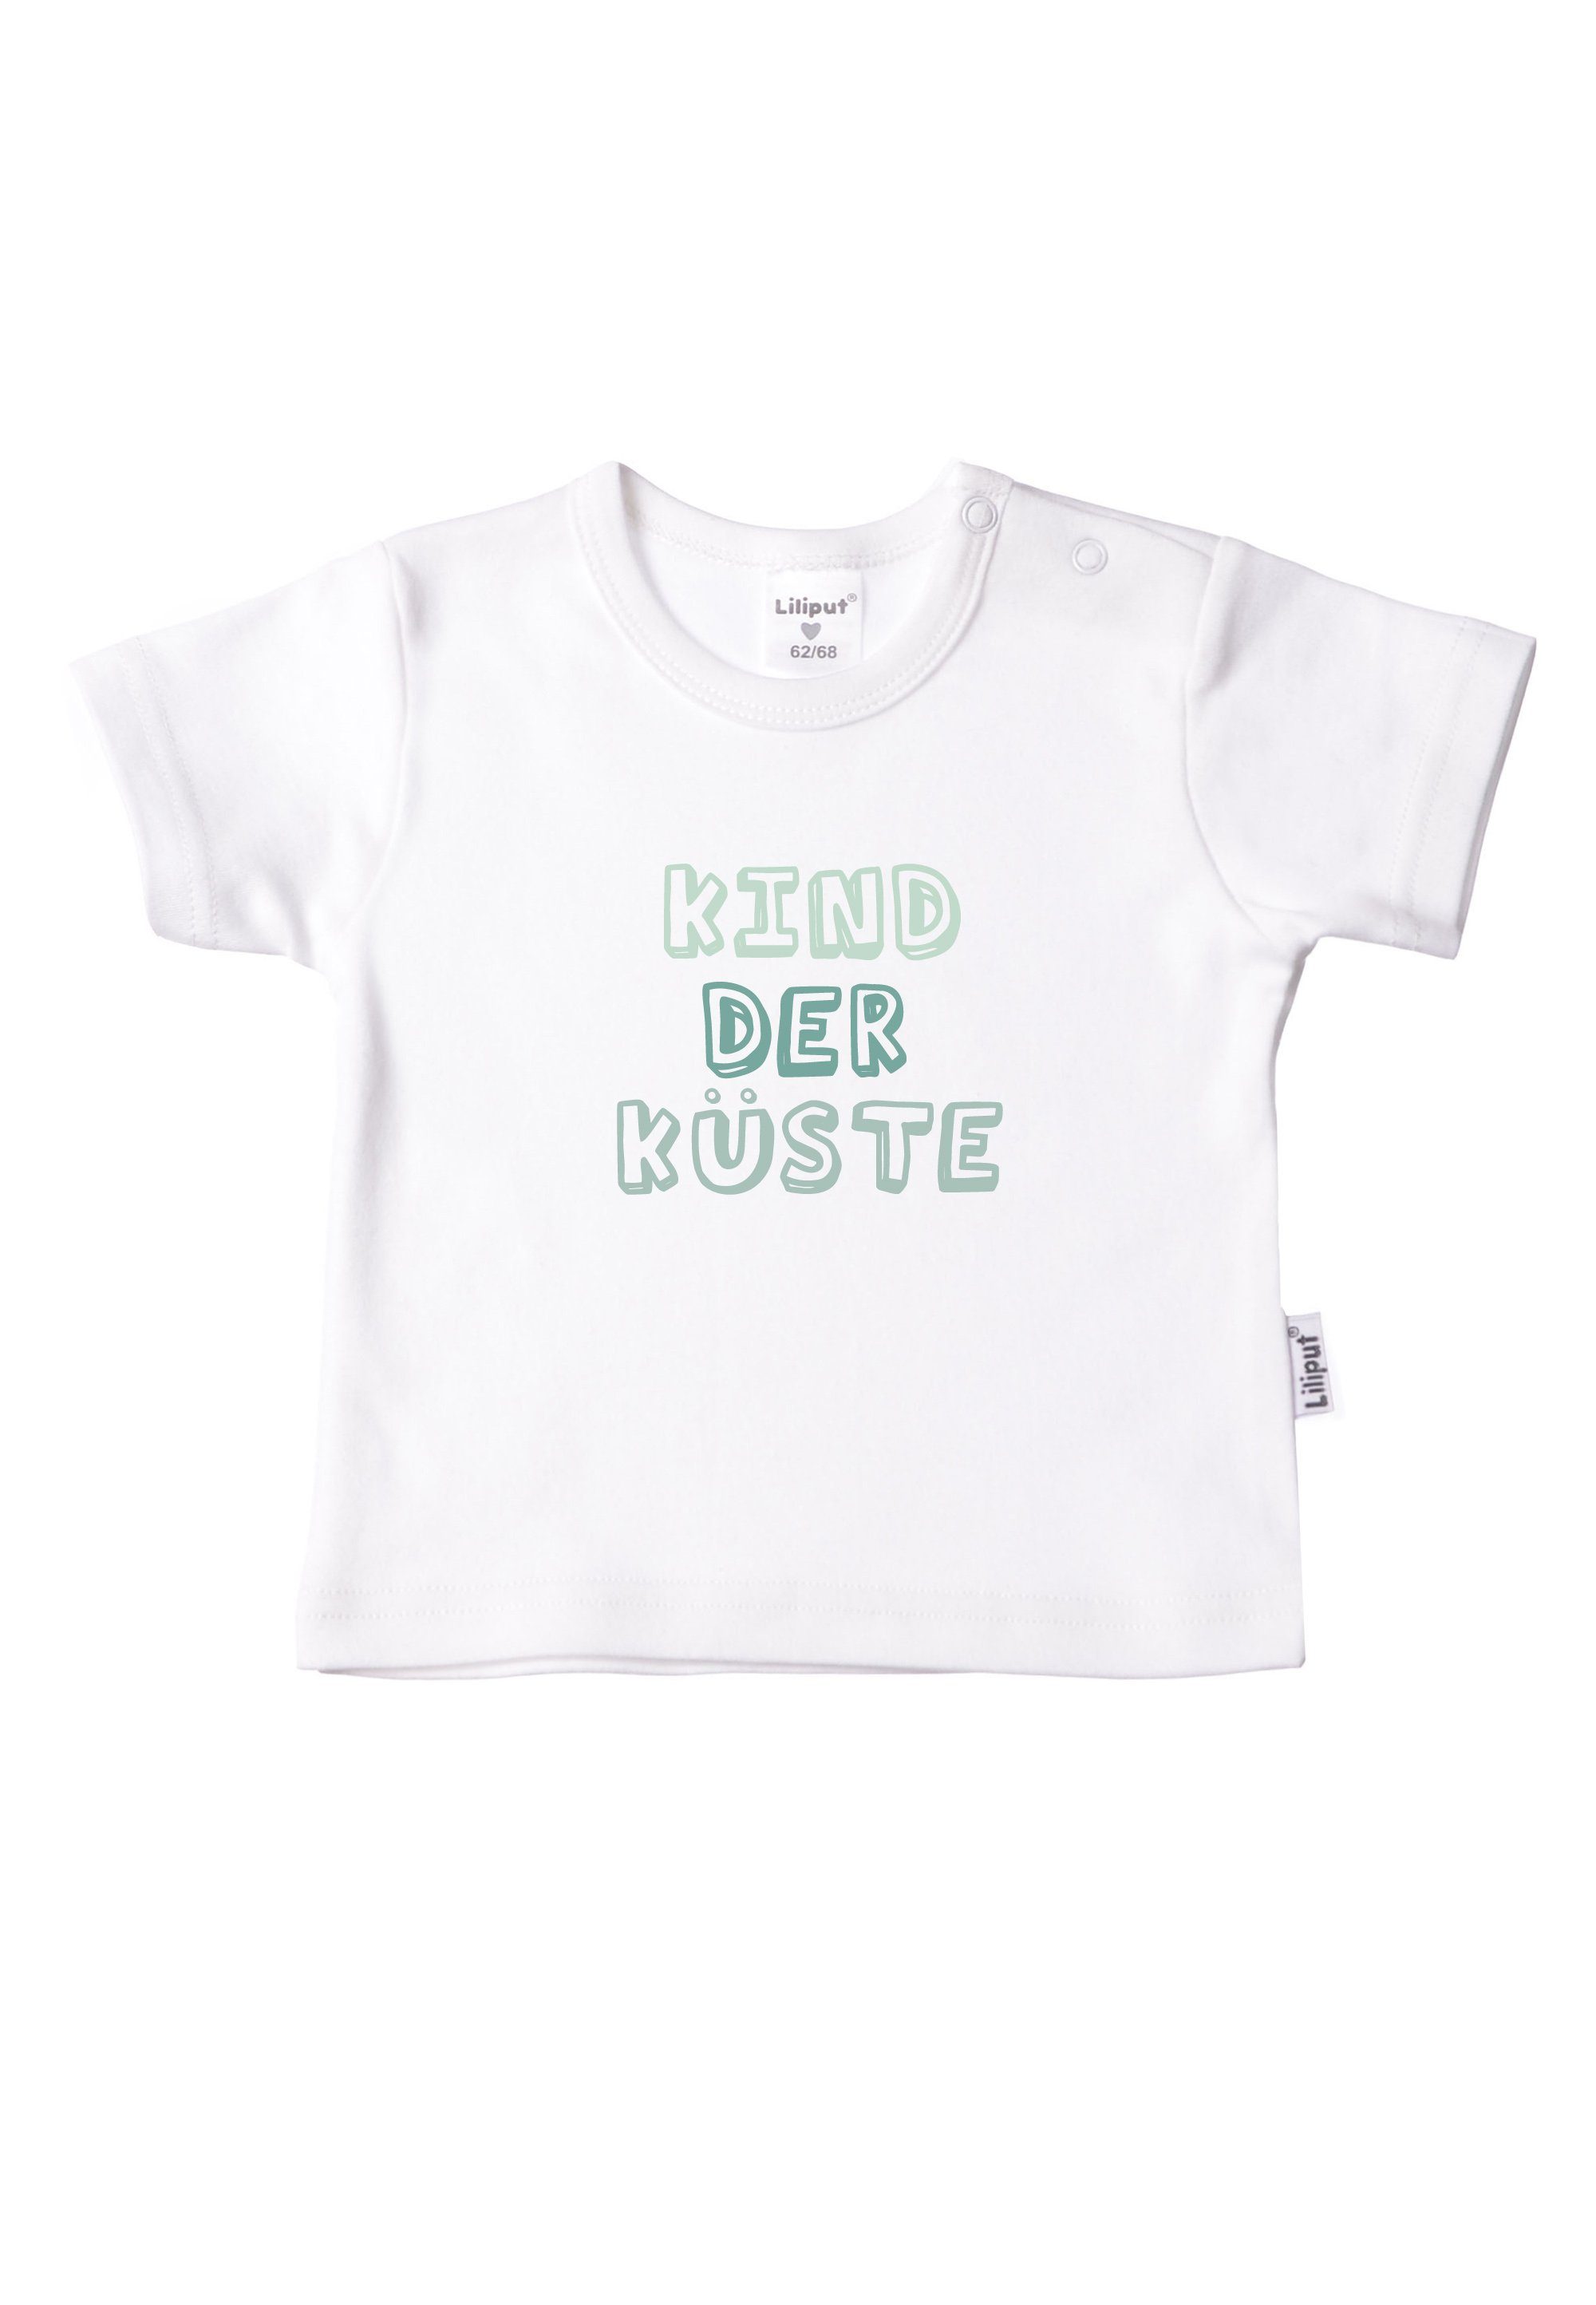 T-Shirt Küste trendigem Statement-Print mit Liliput Kind der